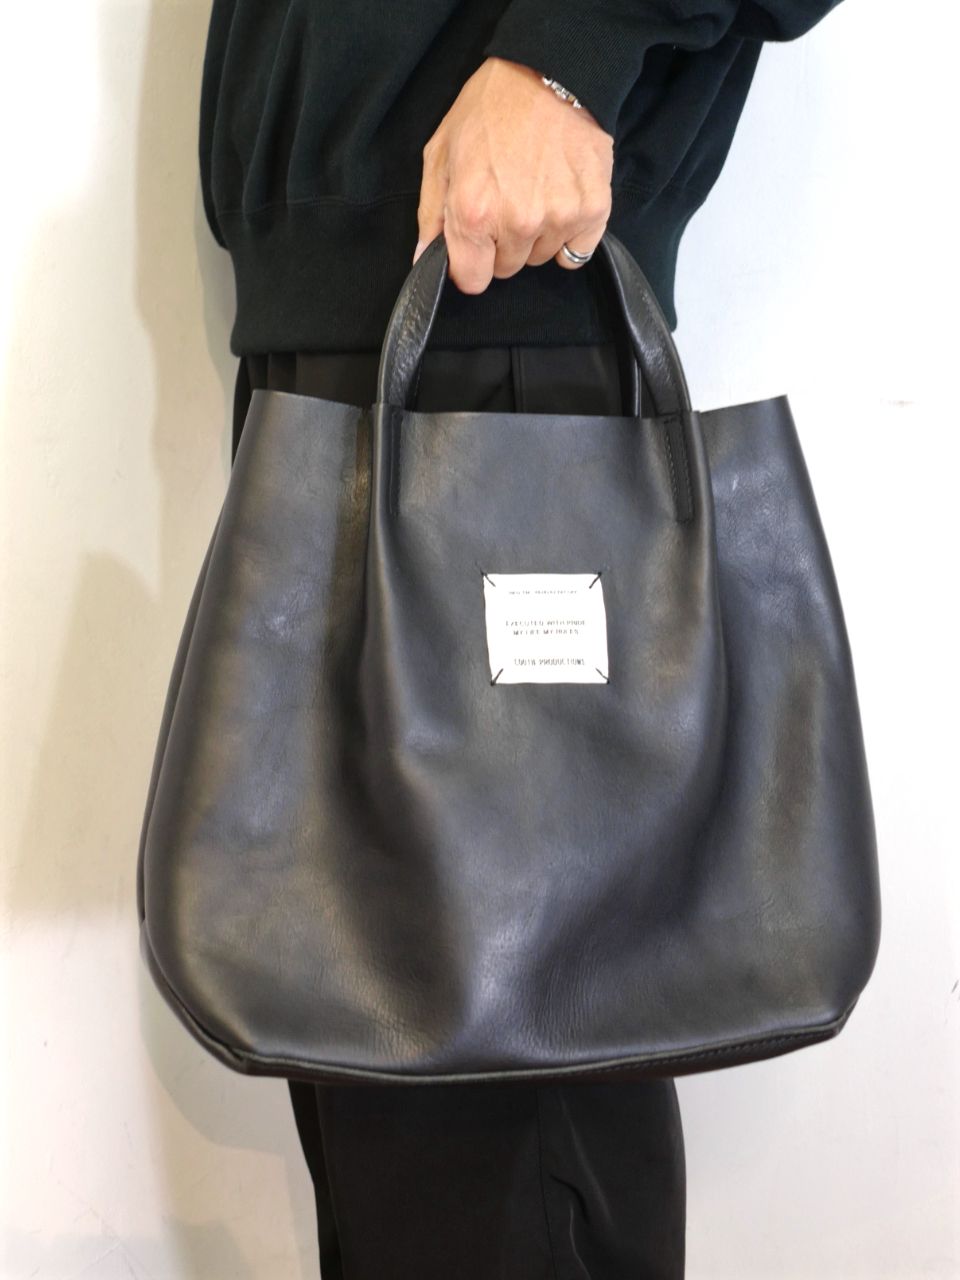 13,160円COOTIE 「Leather C-Store Bag」レザーバッグ